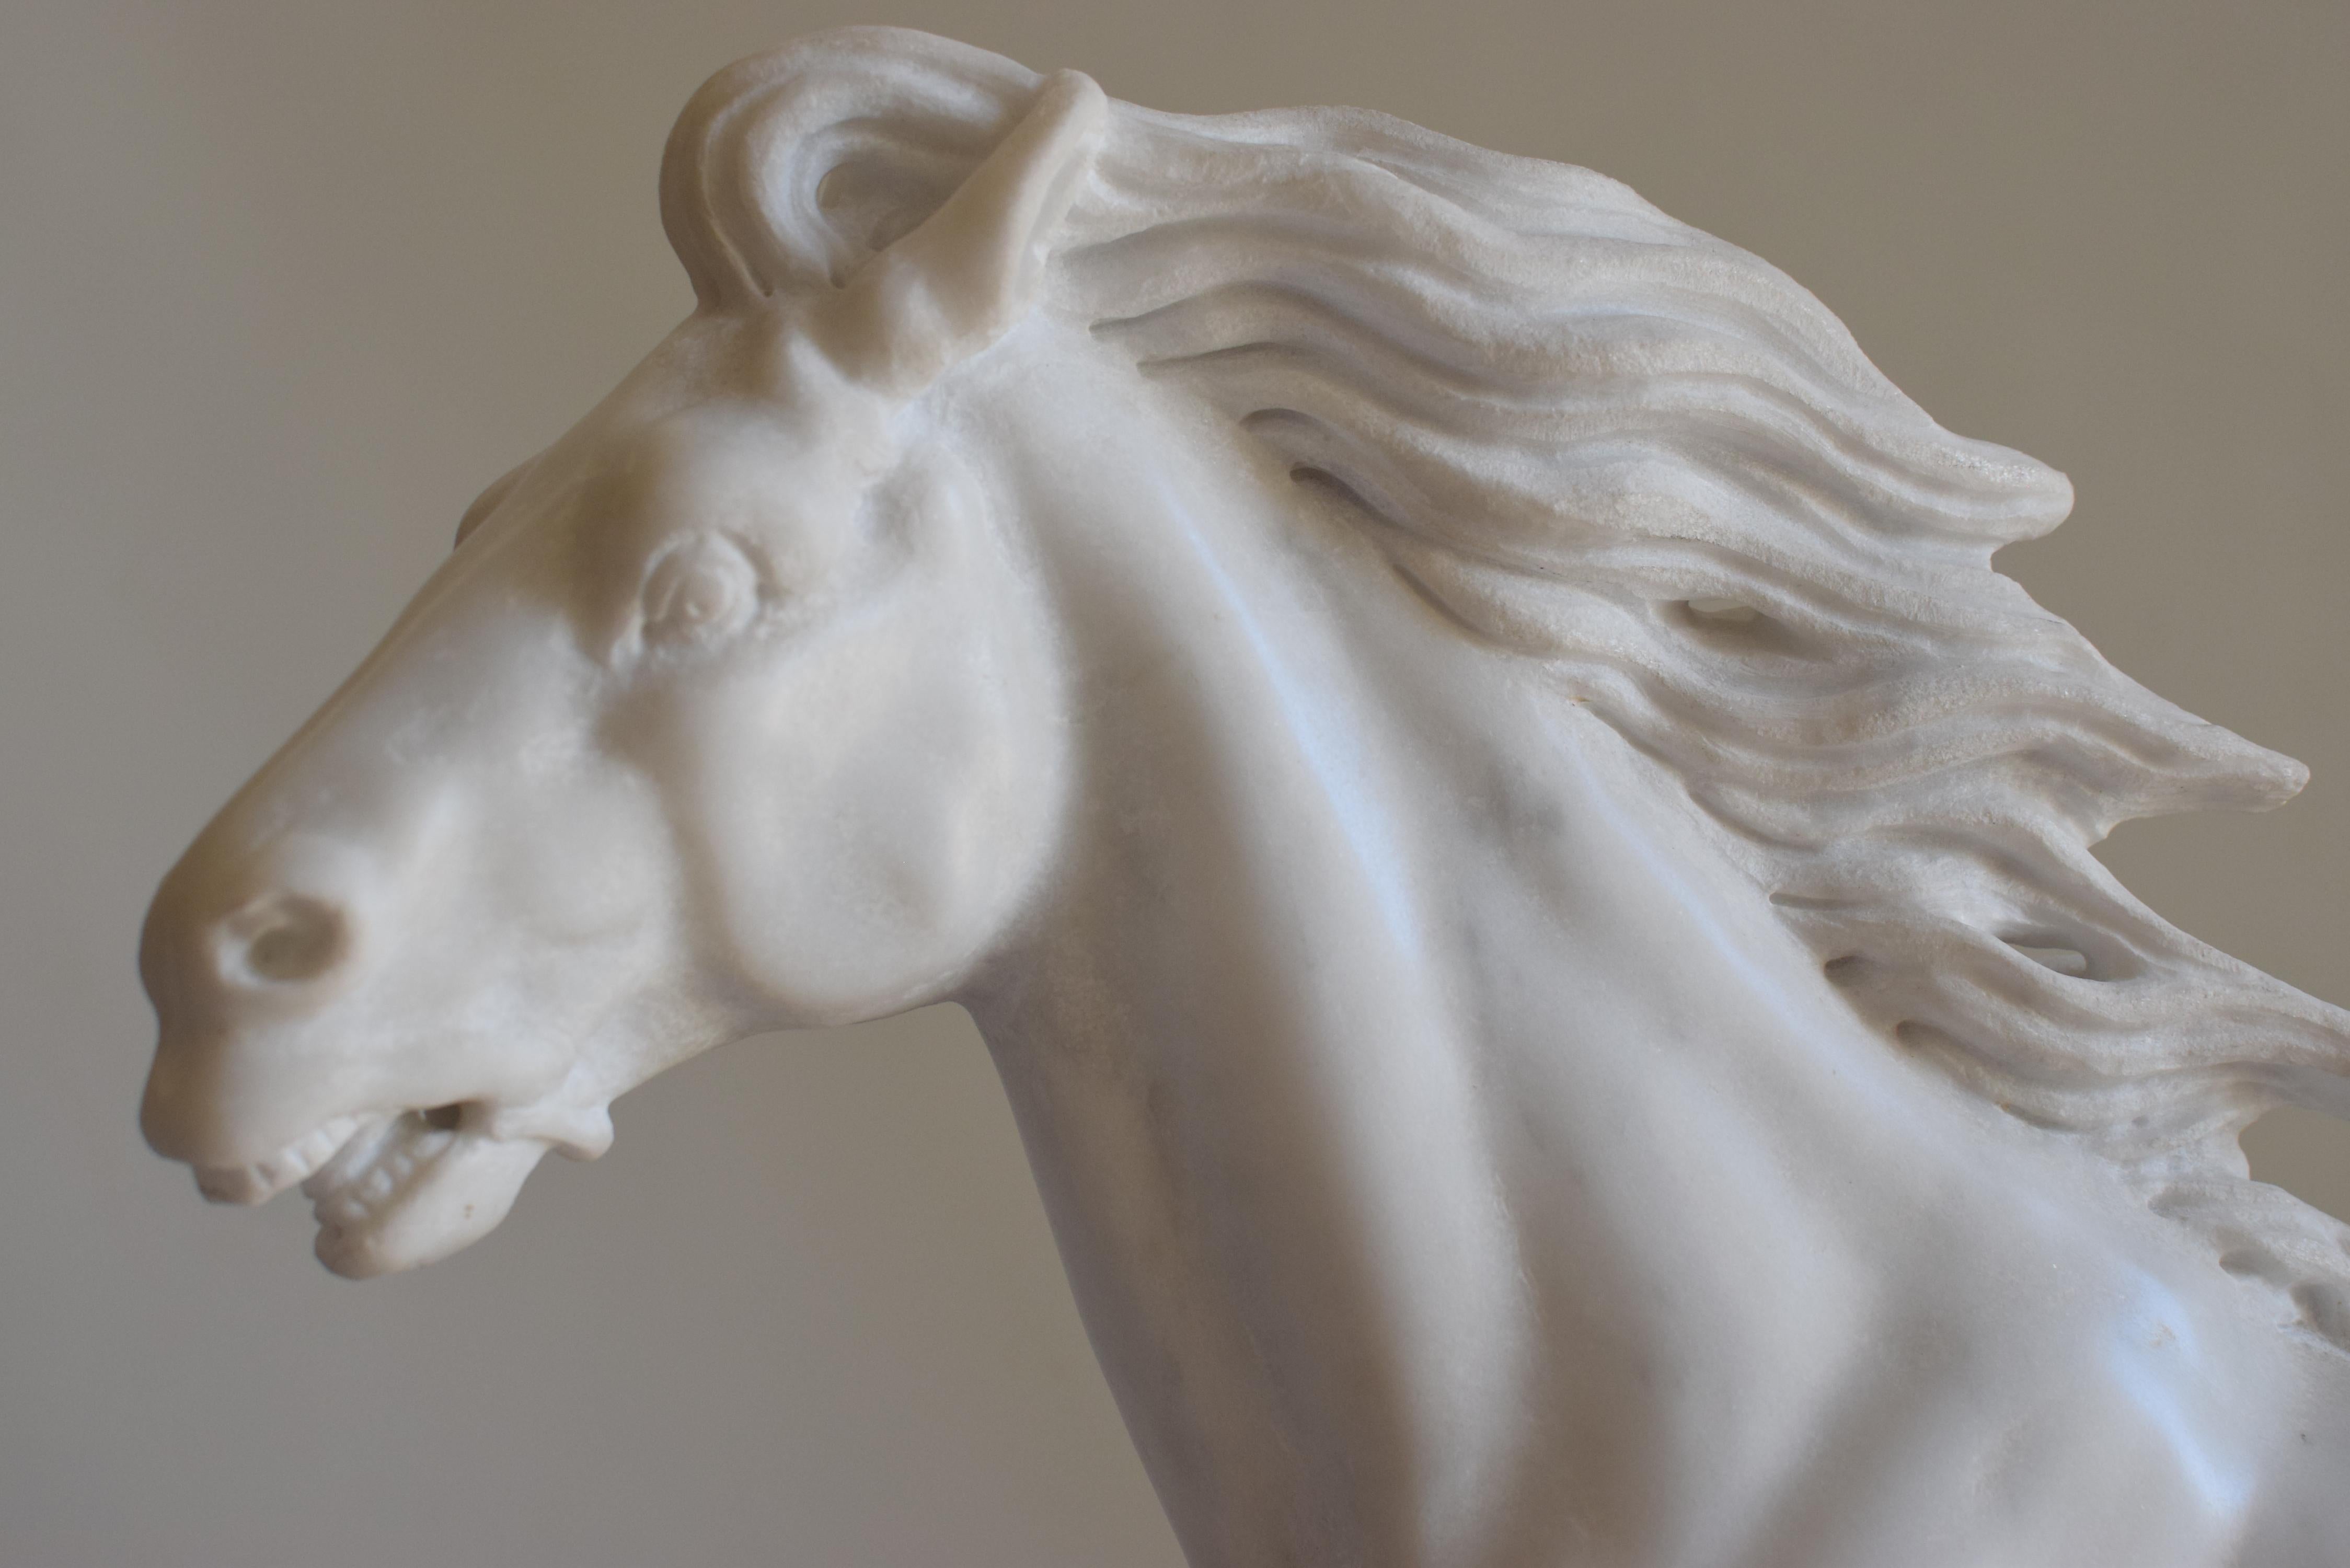 Pferd, laufendes Pferd, Pferdeskulptur, Marmorpferd,
Italienische Skulptur, hergestellt in Italien, Pferd aus weißem Marmor.
Wertvolle Skulptur, die ein laufendes Pferd darstellt.
Geschnitzt auf weißem Carrara-Marmor in der Werkstatt Todini in